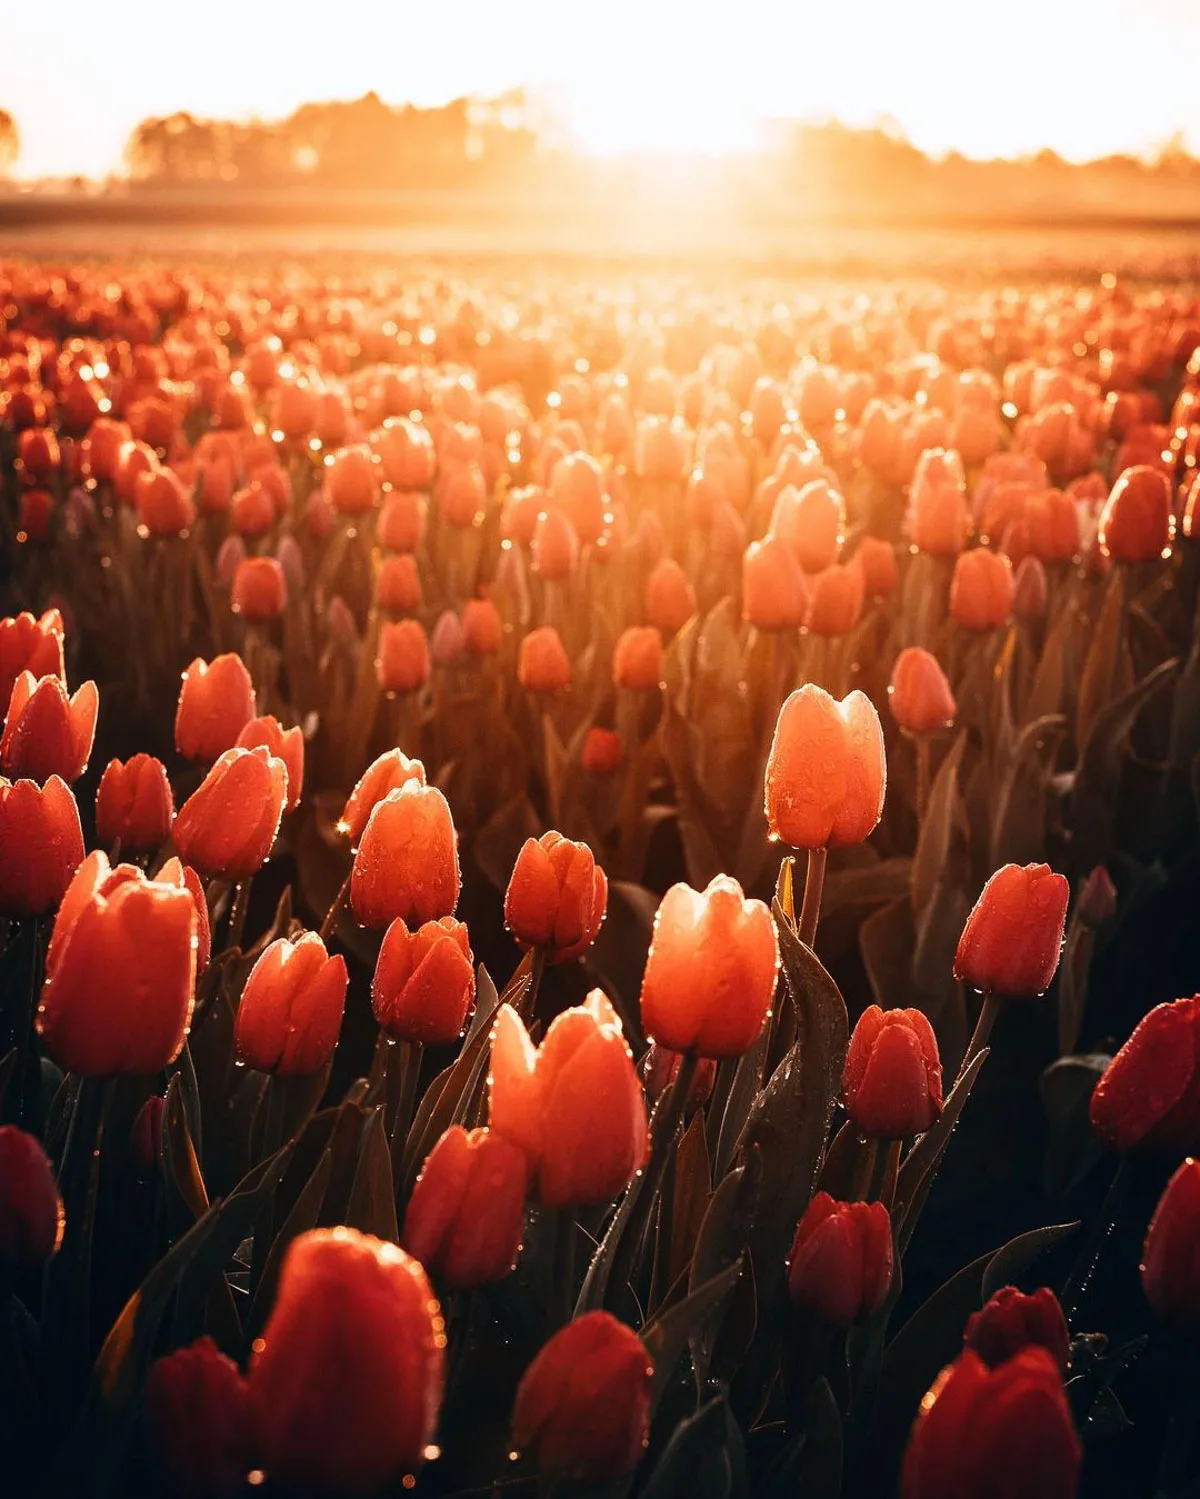 Tulpenvelden Groningen Smilde door fotografe Marion Stoffels